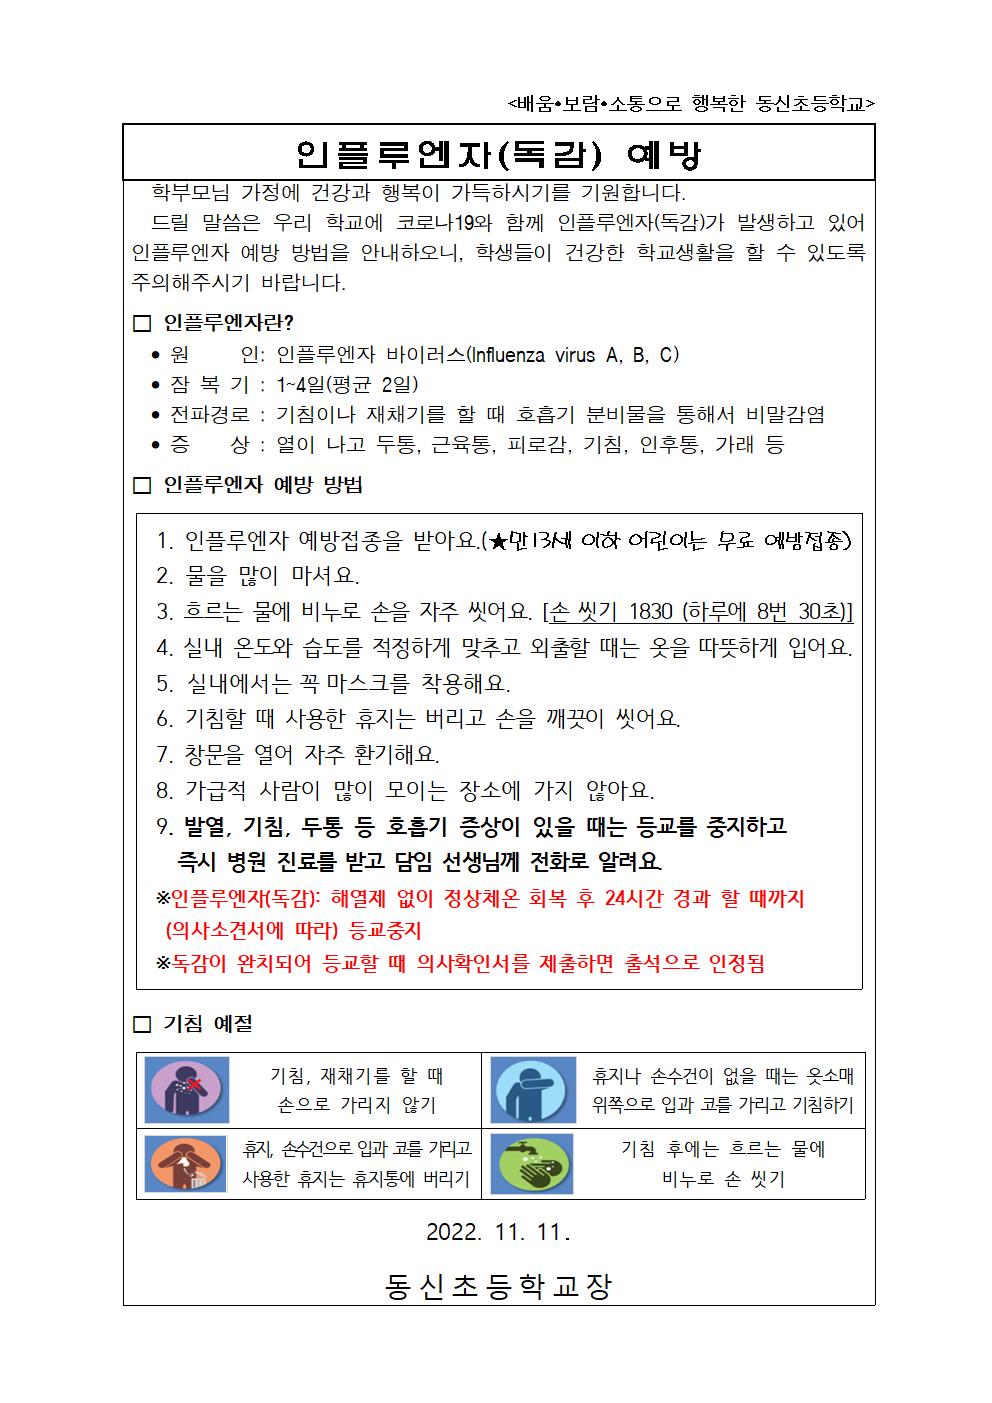 인플루엔자 예방 가정통신문001